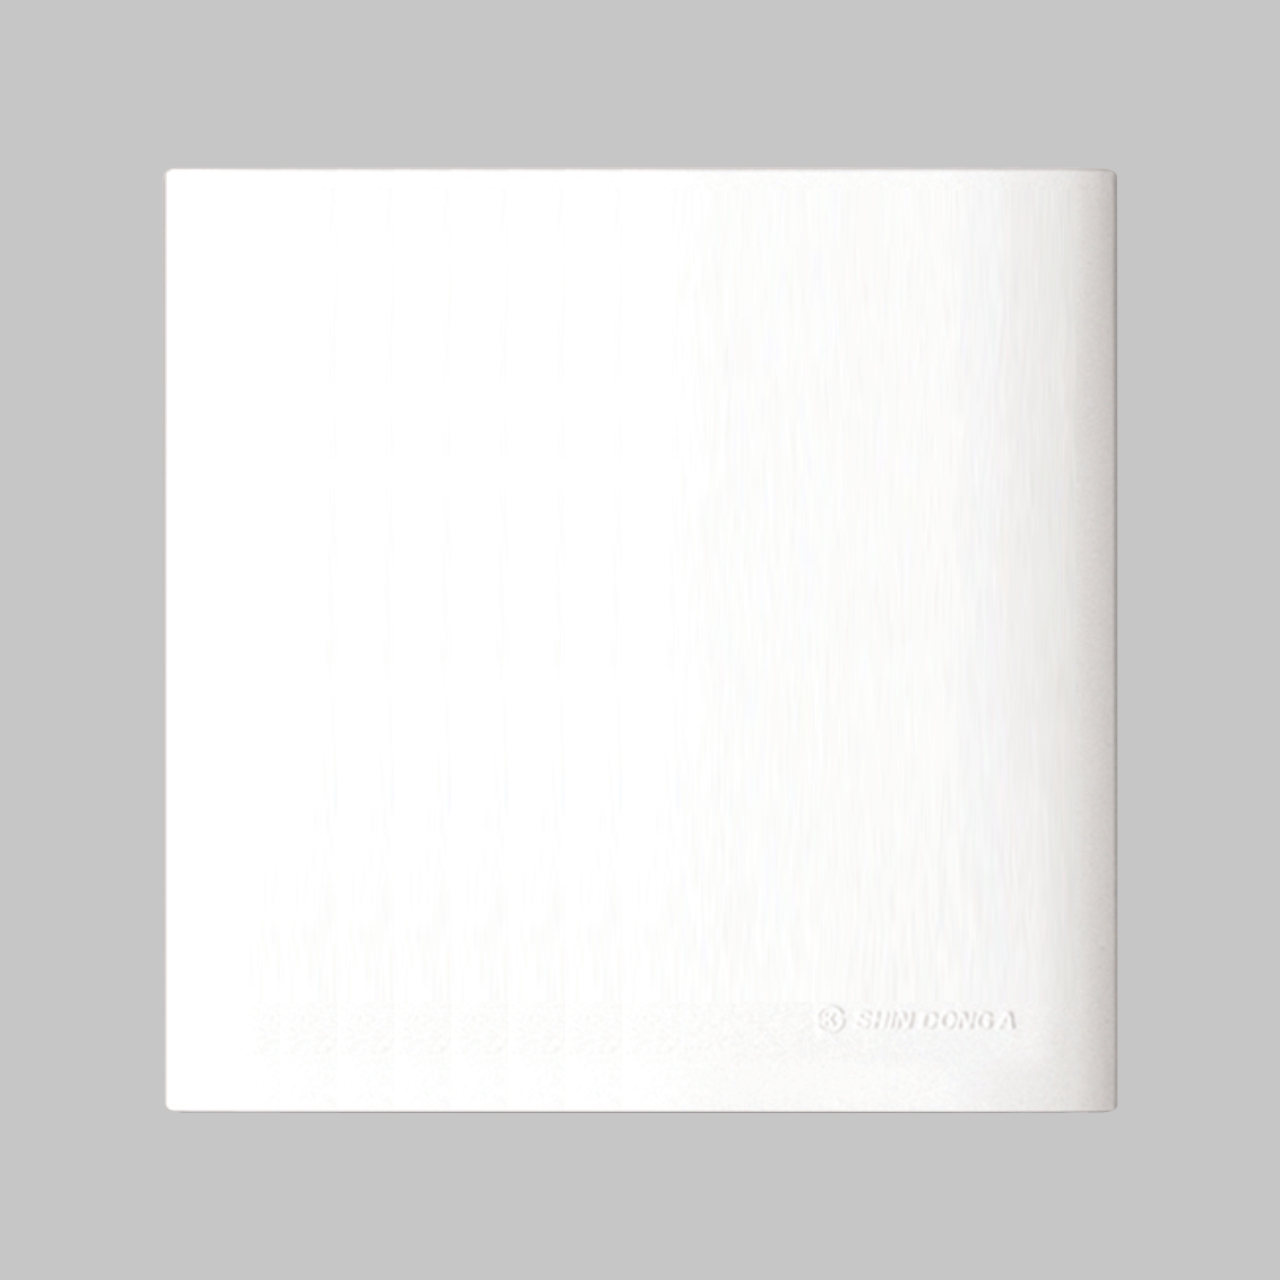 Крышка двойной монтажной коробки декоративная,  Shin Dong-A, Белая. LAON WLO-2027-WH